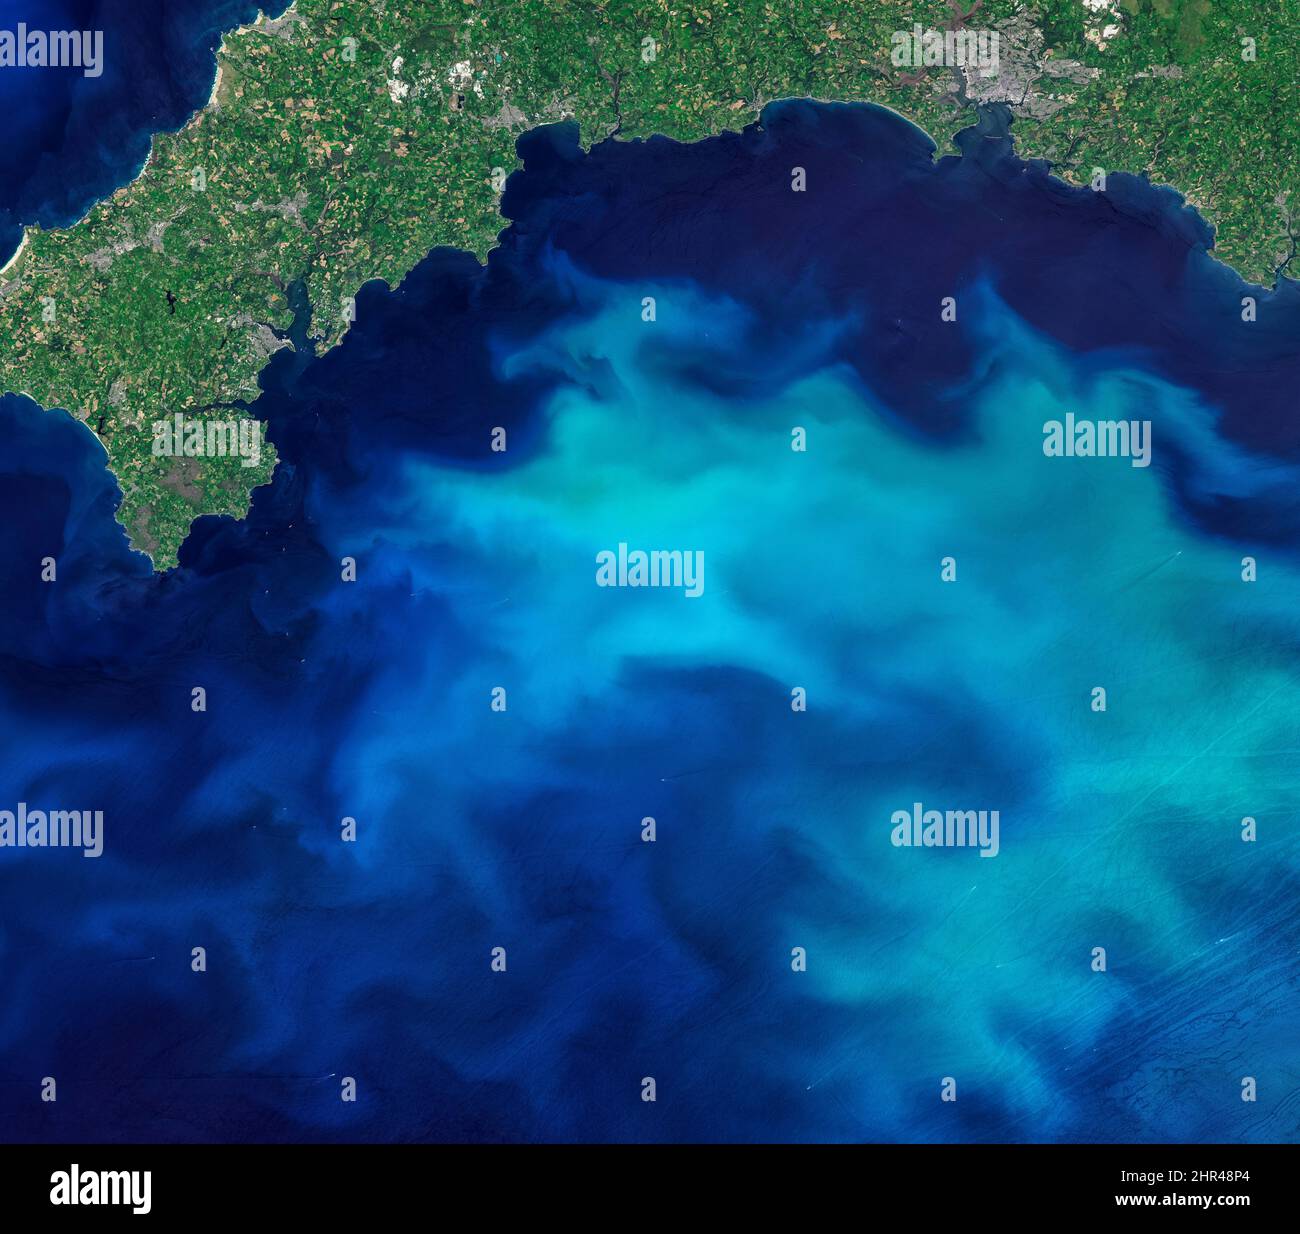 Fioriture di fitoplancton nel mare intorno all'Inghilterra, foto aerea dall'alto del mare blu, immagine turchese dell'oceano. Elementi di questa immagine forniti dalla NASA. Foto Stock